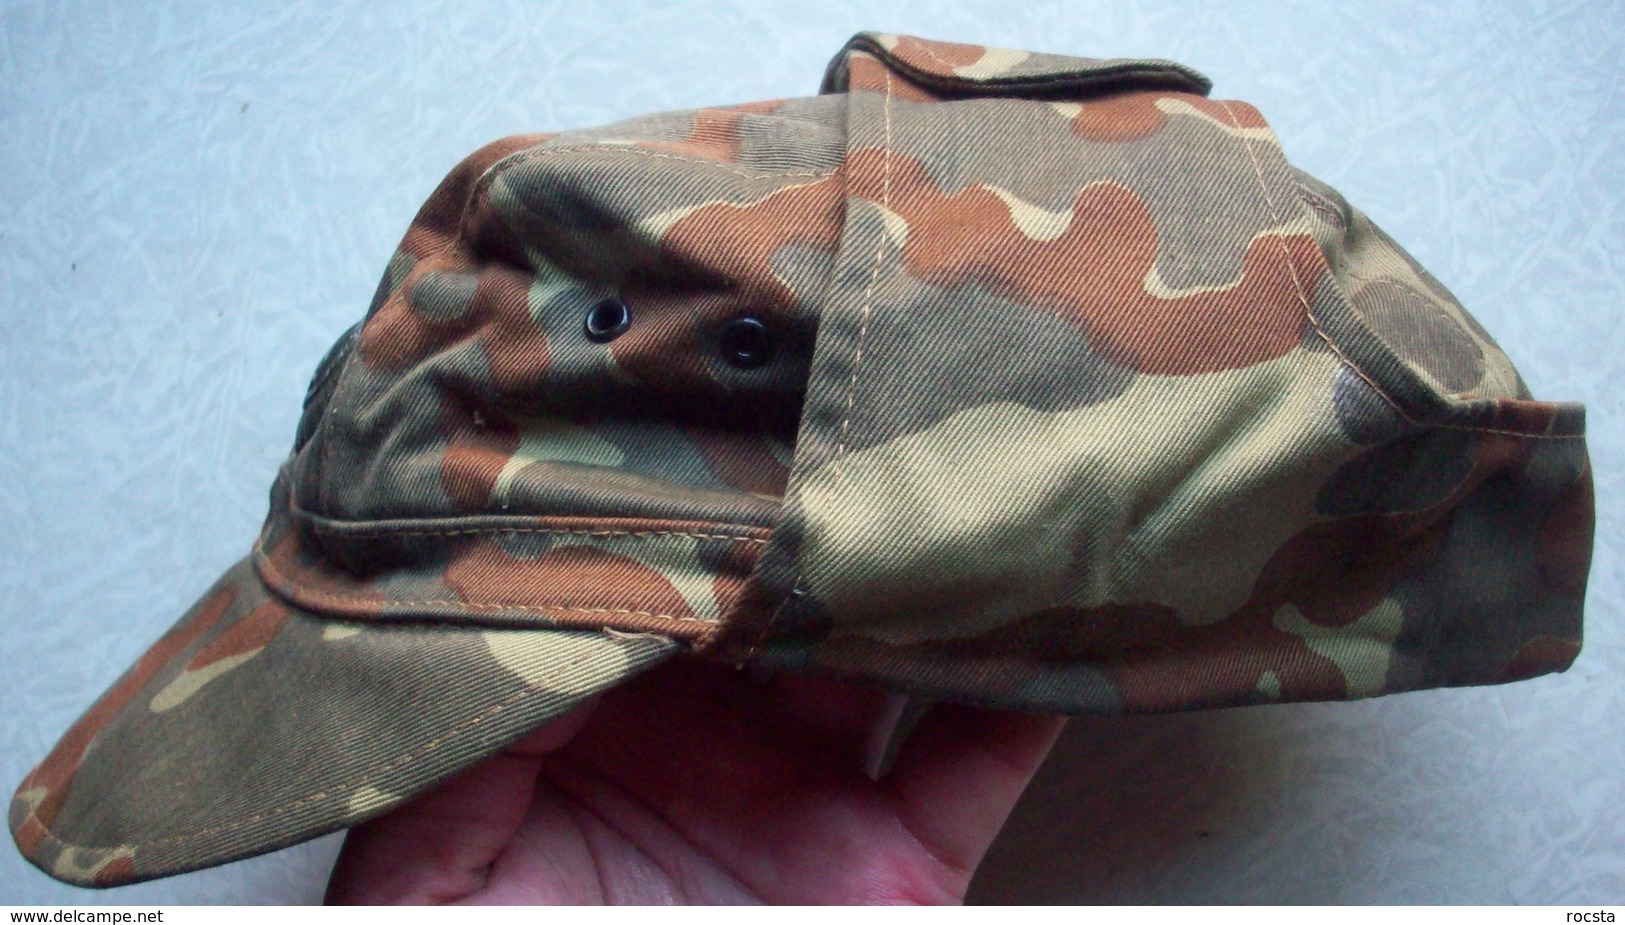 Ukrainian Army Ensign Camouflage Uniform Set (cap, Jacket, Pants) ATO - Size 46 - Divise